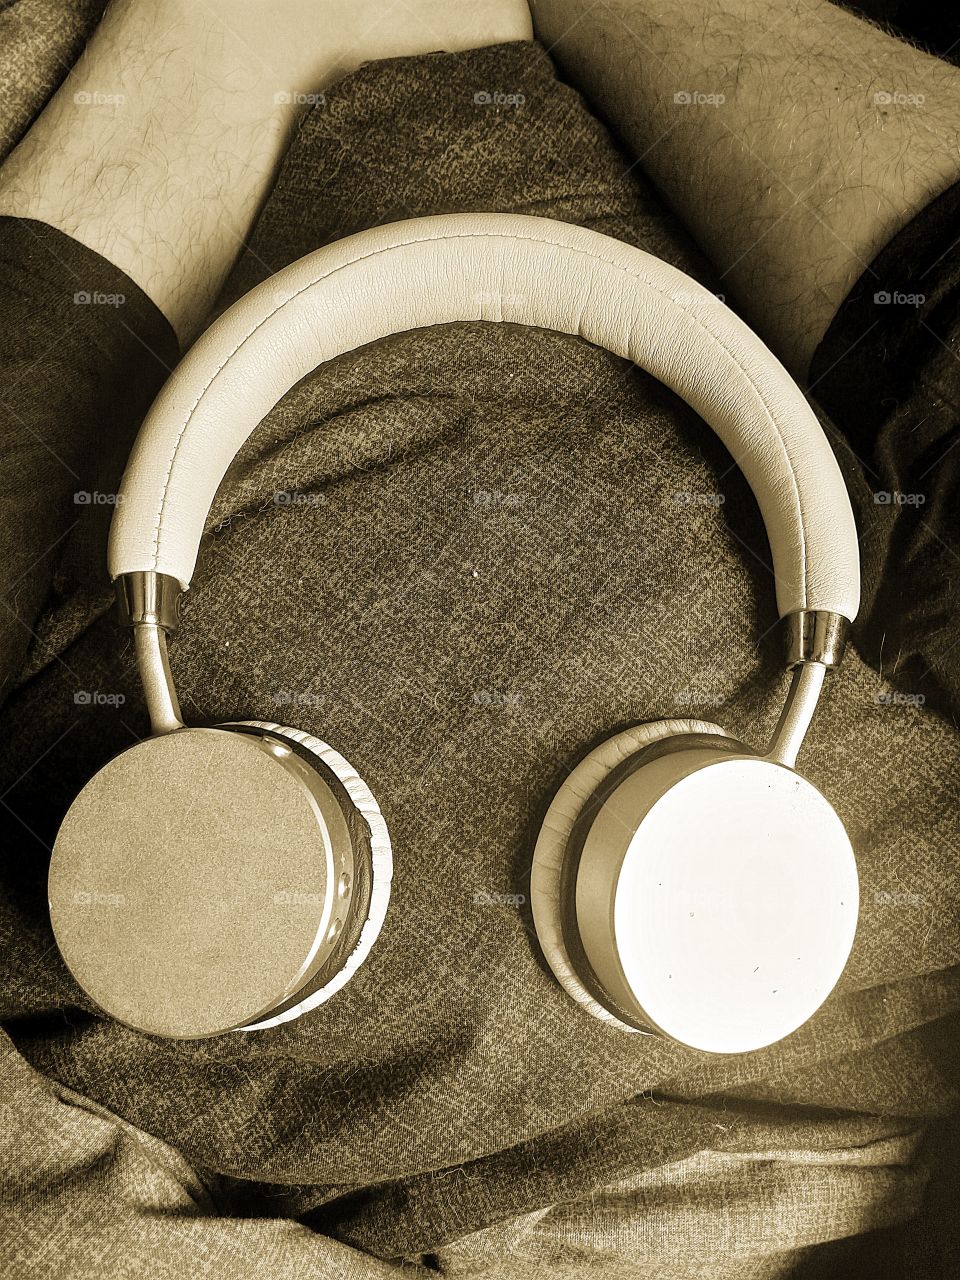 headphones in sepia tone